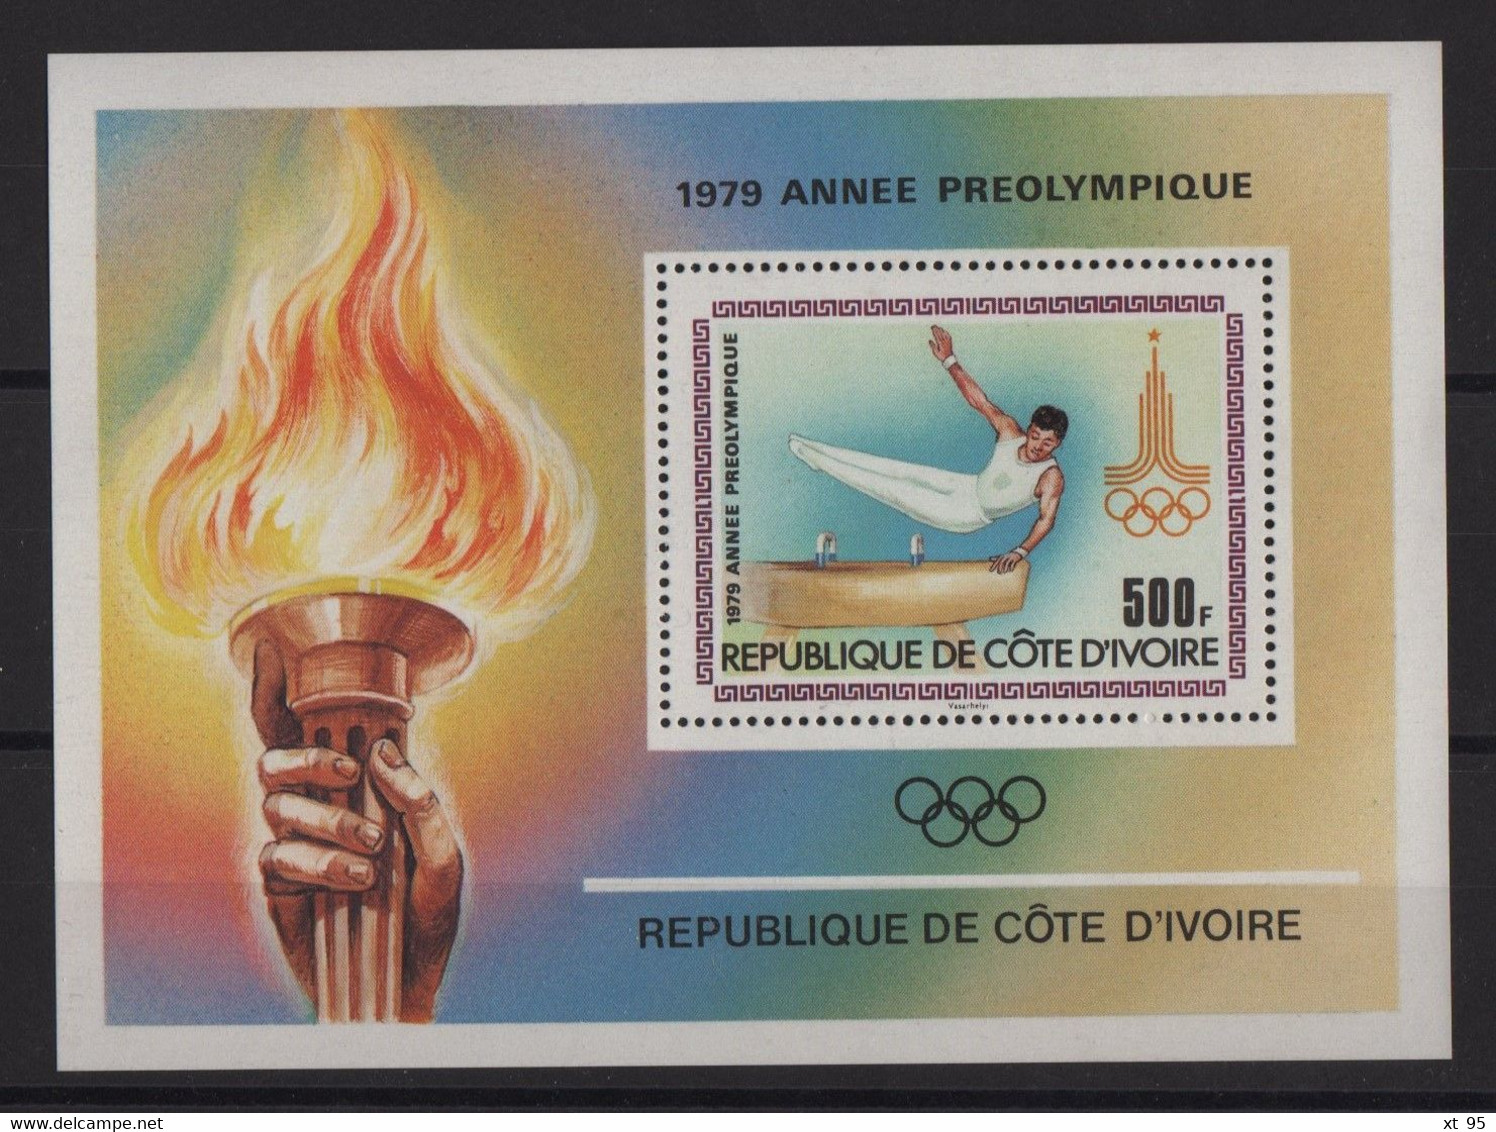 Cote D Ivoire - BF 15 - Jeux Olympiques - Gymnastique - Cote 6€ - ** Neufs Sans Charniere - Costa De Marfil (1960-...)